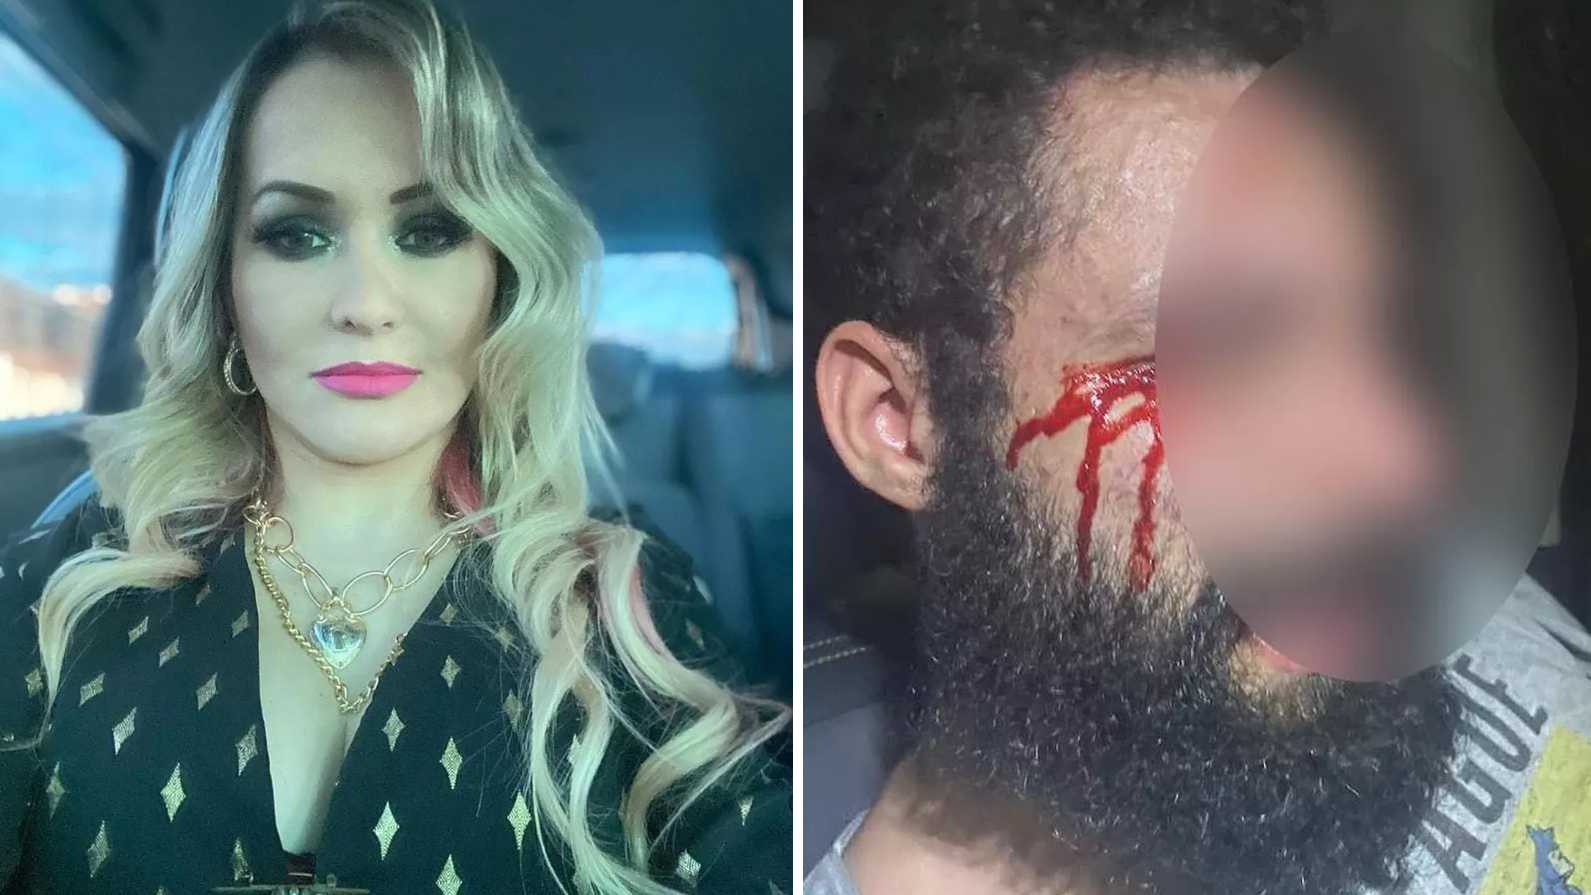 Médica condenada por mandar cortar pênis do ex é investigada por torturar marido